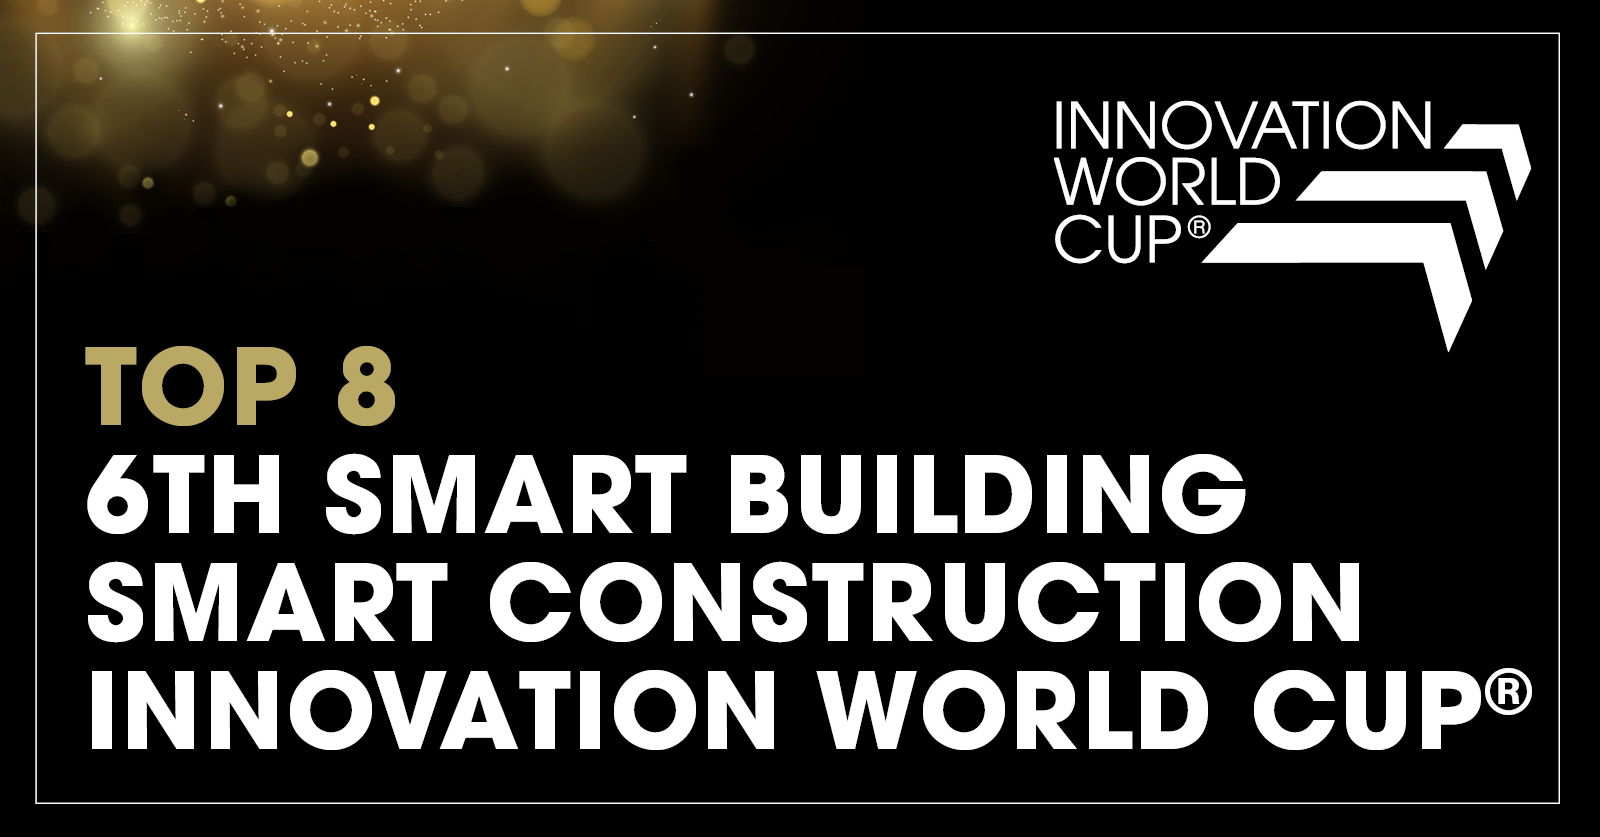 Lors de la 2023 Innovation World Cup© à Munich, le spécialiste CVC européen Hysopt (abréviation de Hydronic System Optimisation) s’est vu sélectionner parmi les premiers innovateurs dans le monde en matière de bâtiments et de construction intelligents.